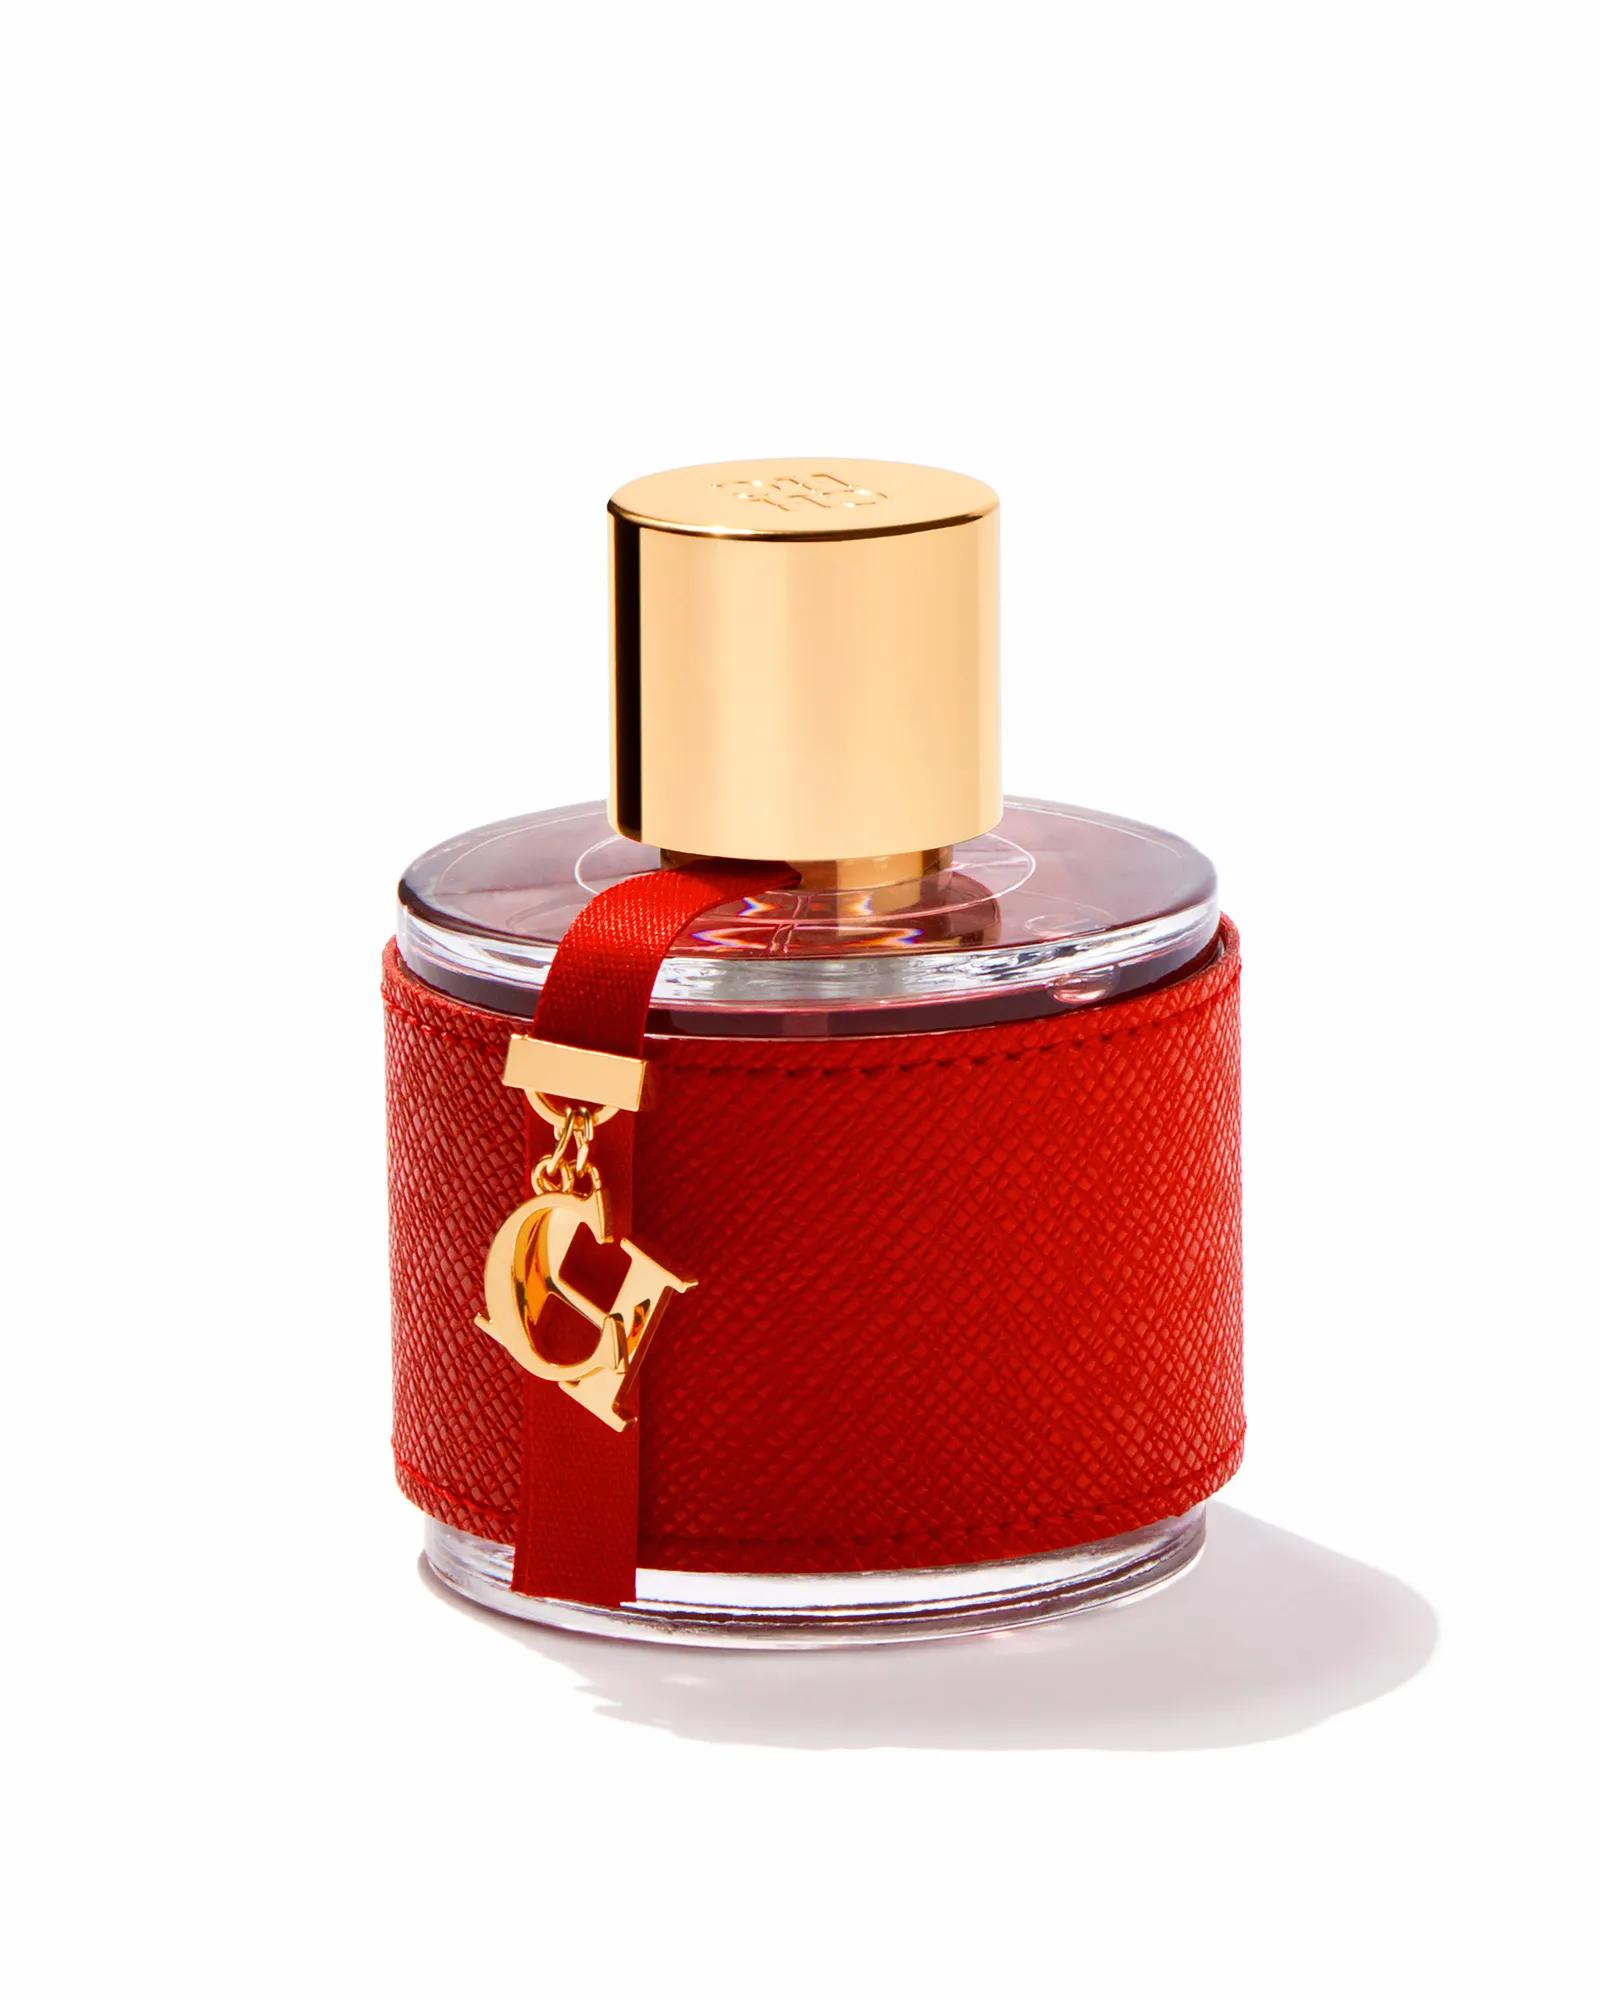 que aroma tiene el perfume carolina herrera - Qué aroma tiene Carolina Herrera tradicional